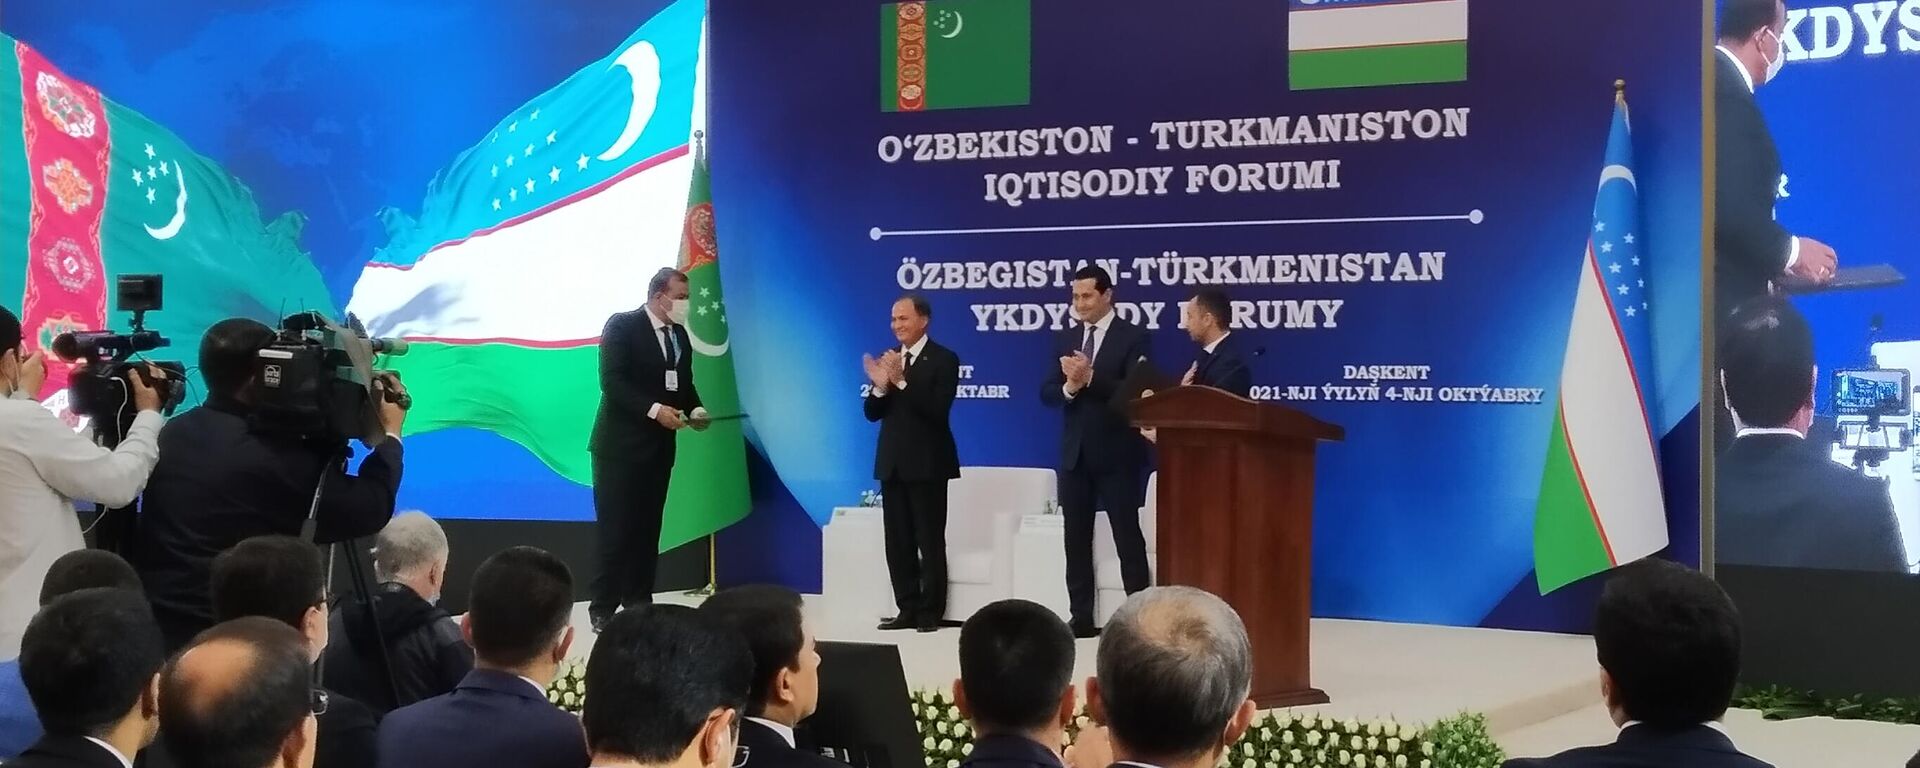 Uzbeksko-turkmenskiy forum v Tashkente - Sputnik Oʻzbekiston, 1920, 04.10.2021